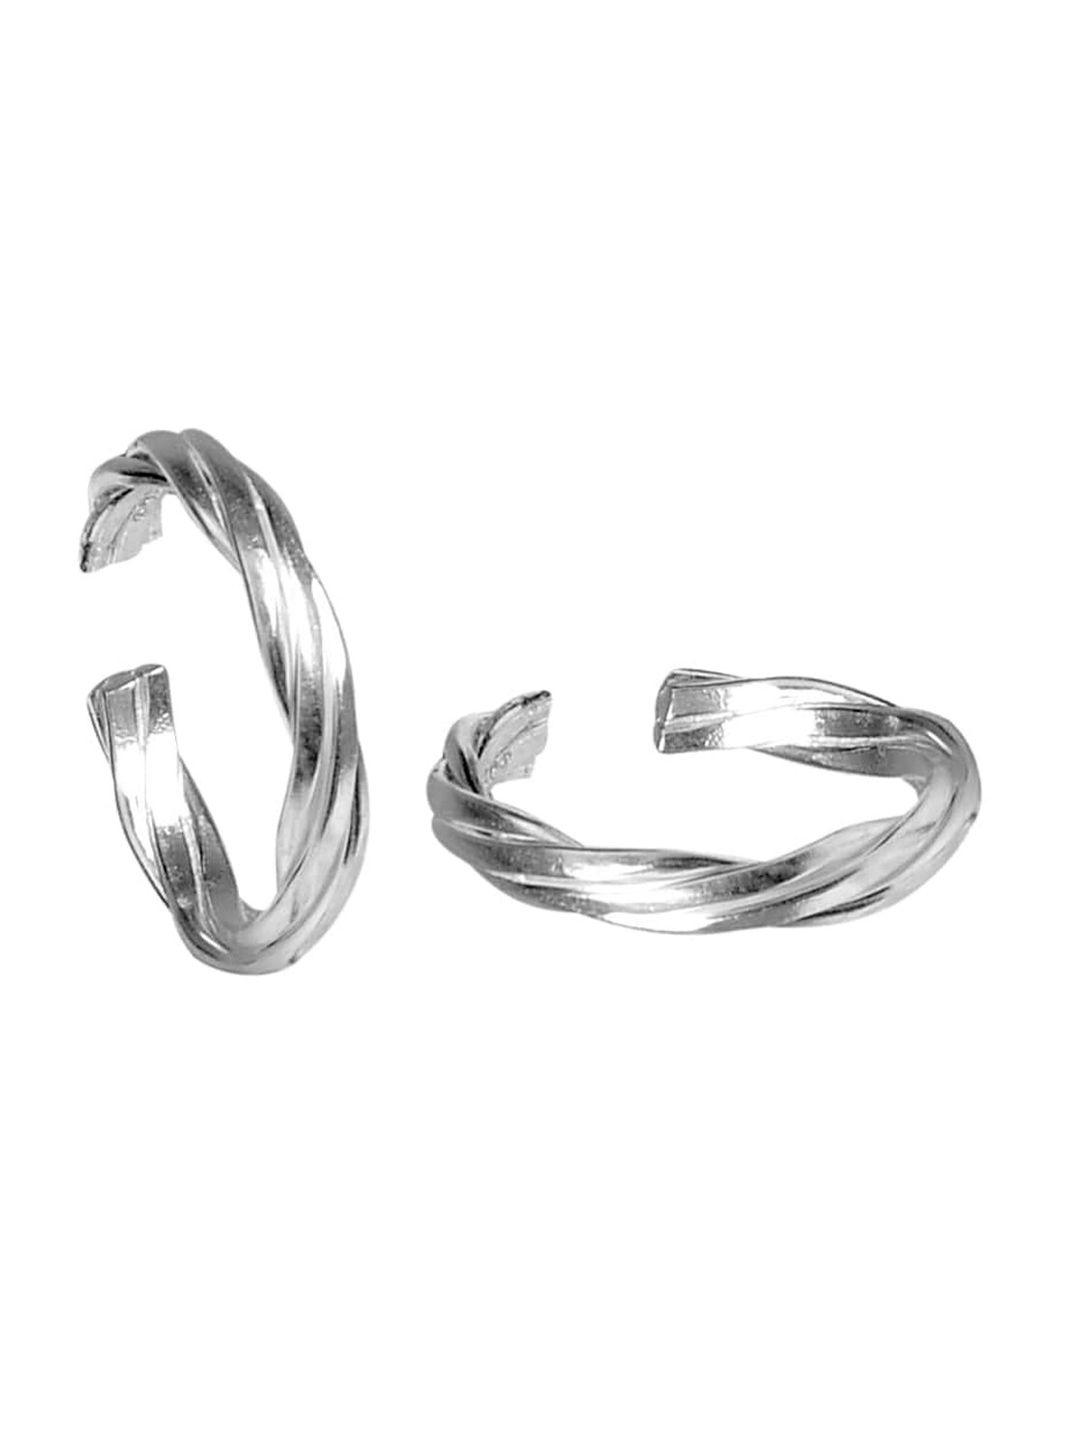 abhooshan-set-of-2-92.5-sterling-silver-adjustable-toe-rings